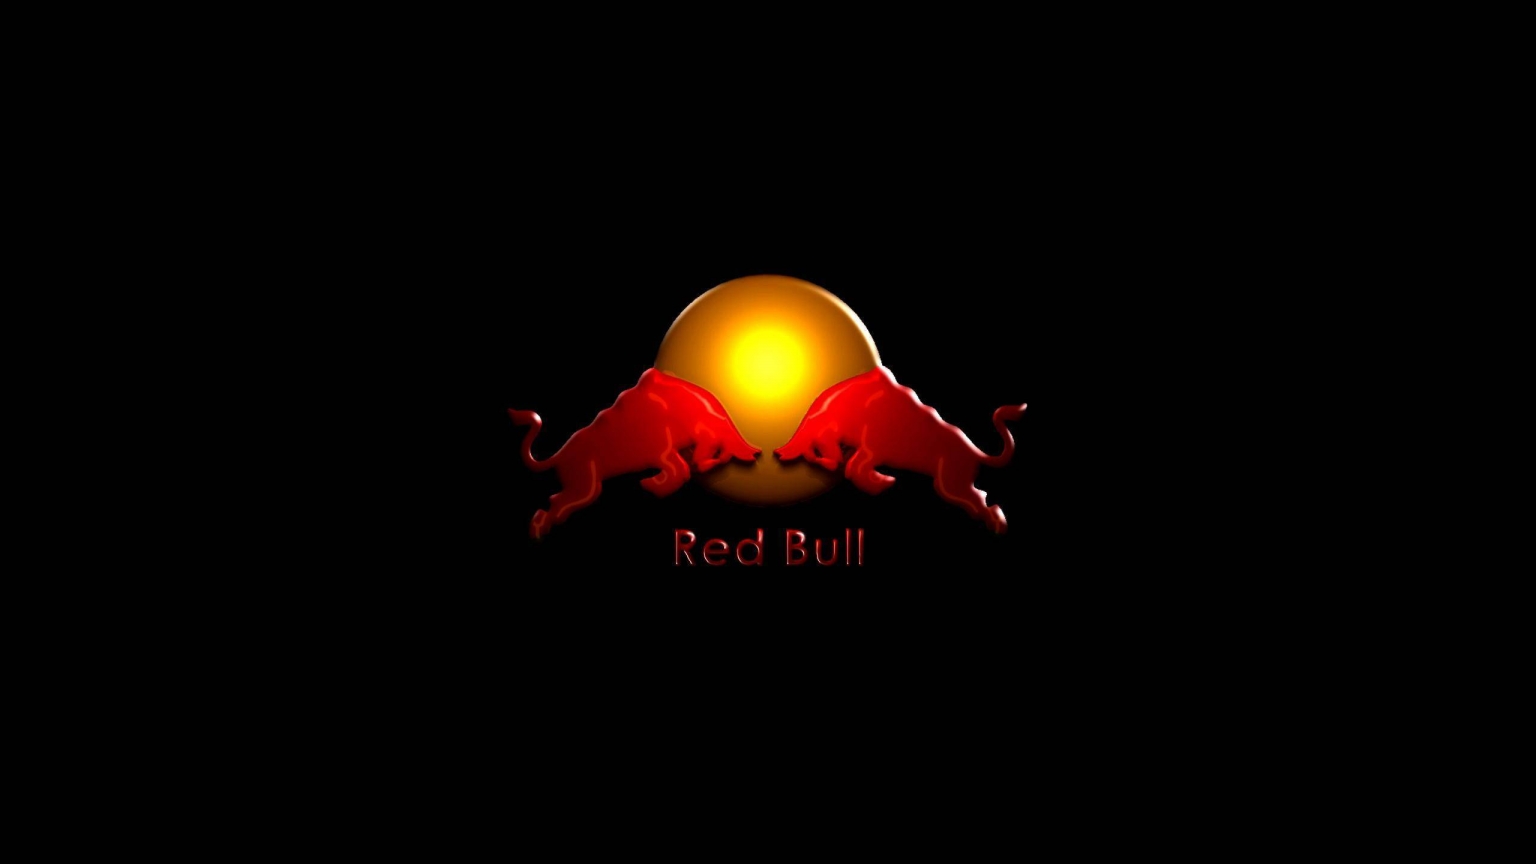 Red Bull for 1536 x 864 HDTV resolution